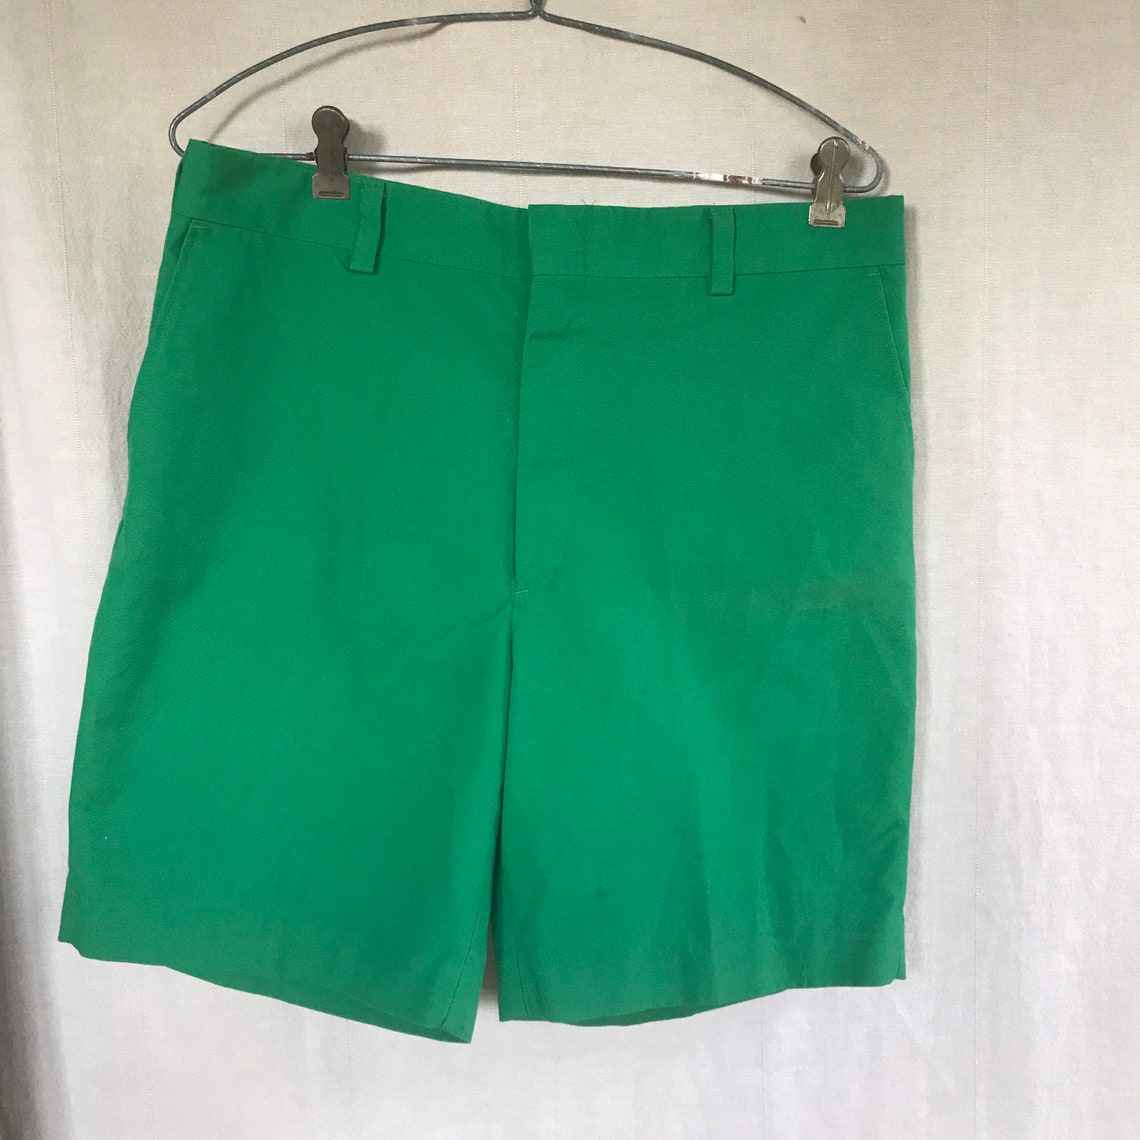 Men's Golf Shorts Kelly Green Sportswear Style 70s 60s | Etsy